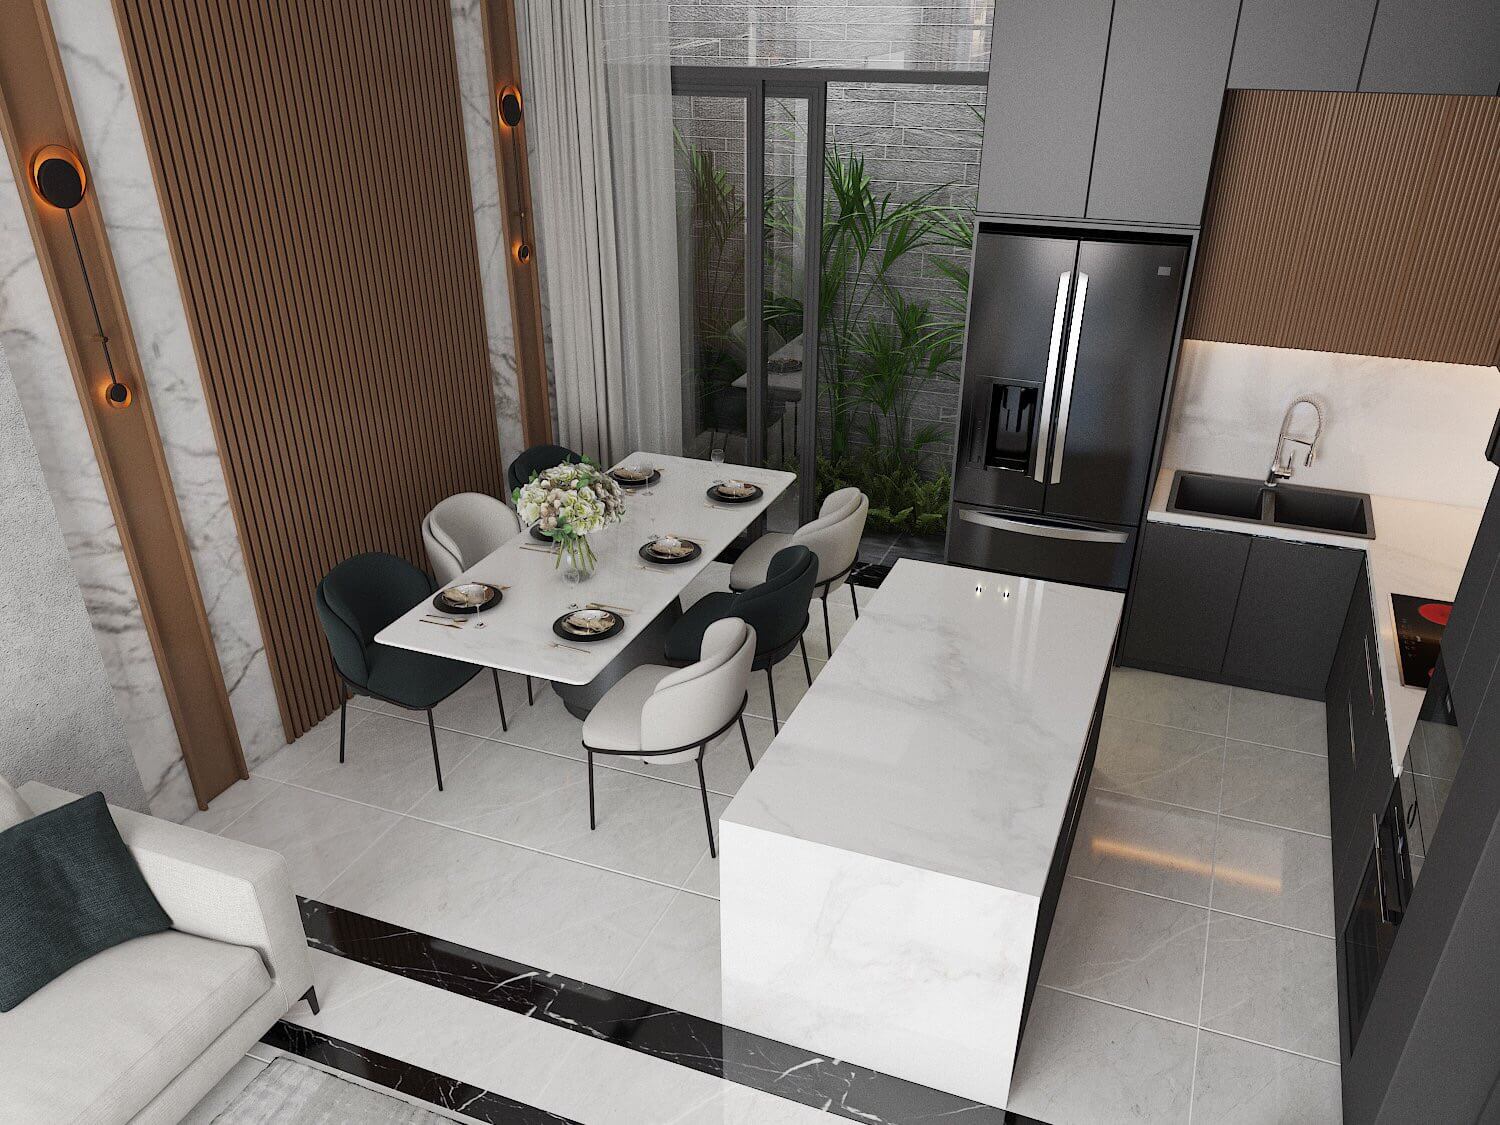 Phòng ăn, phòng bếp, phong cách Hiện đại Modern, thiết kế concept nội thất, nhà phố Quận 4